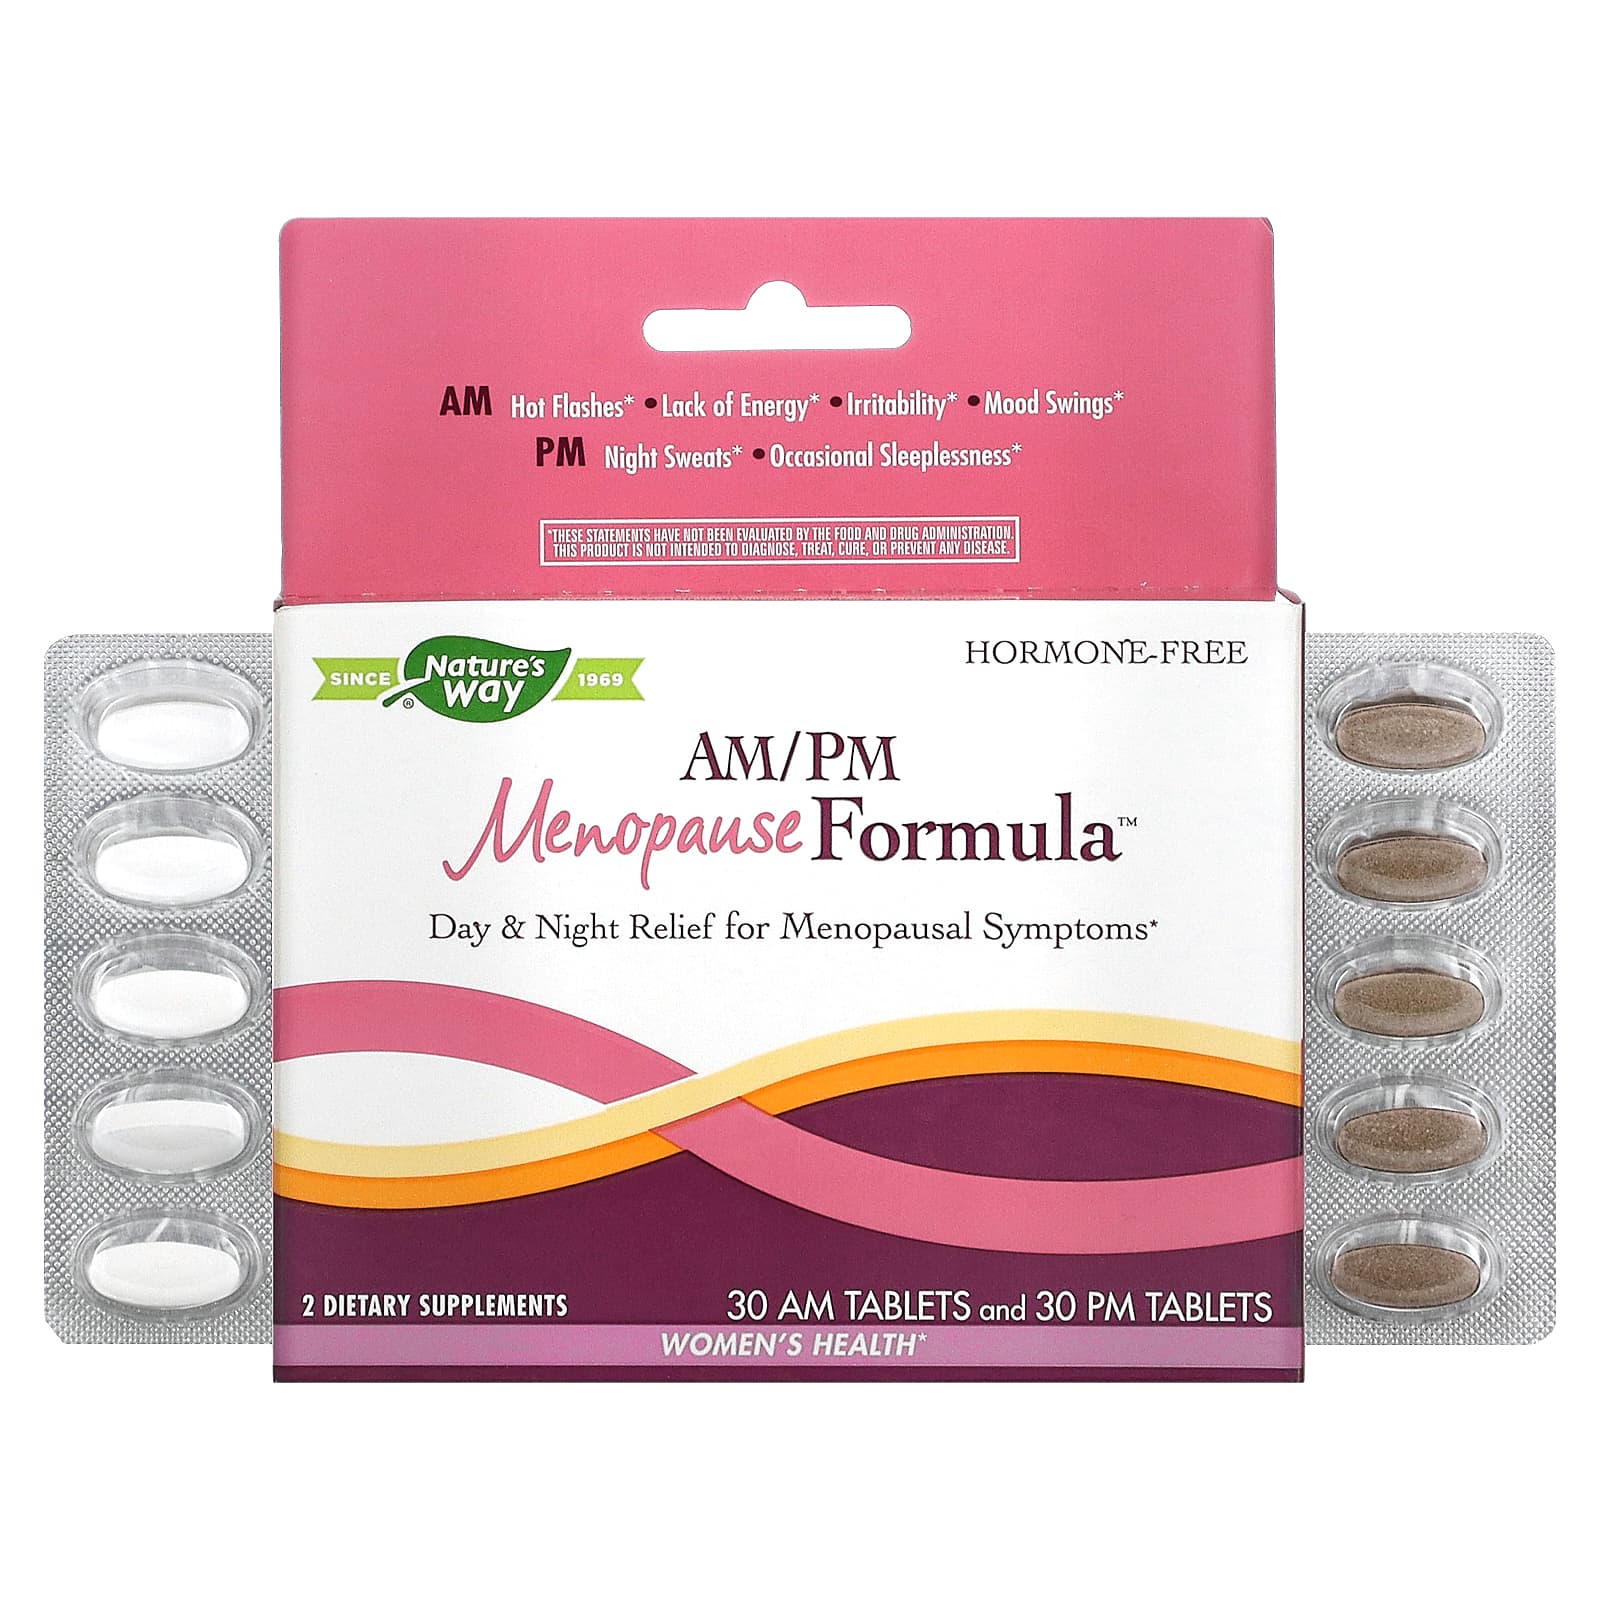 Nature's Way AM/PM Формула менопаузы Формула для женщин 60 таблеток формула поддержки для женского здоровья nature s way во время менопаузы 60 таблеток